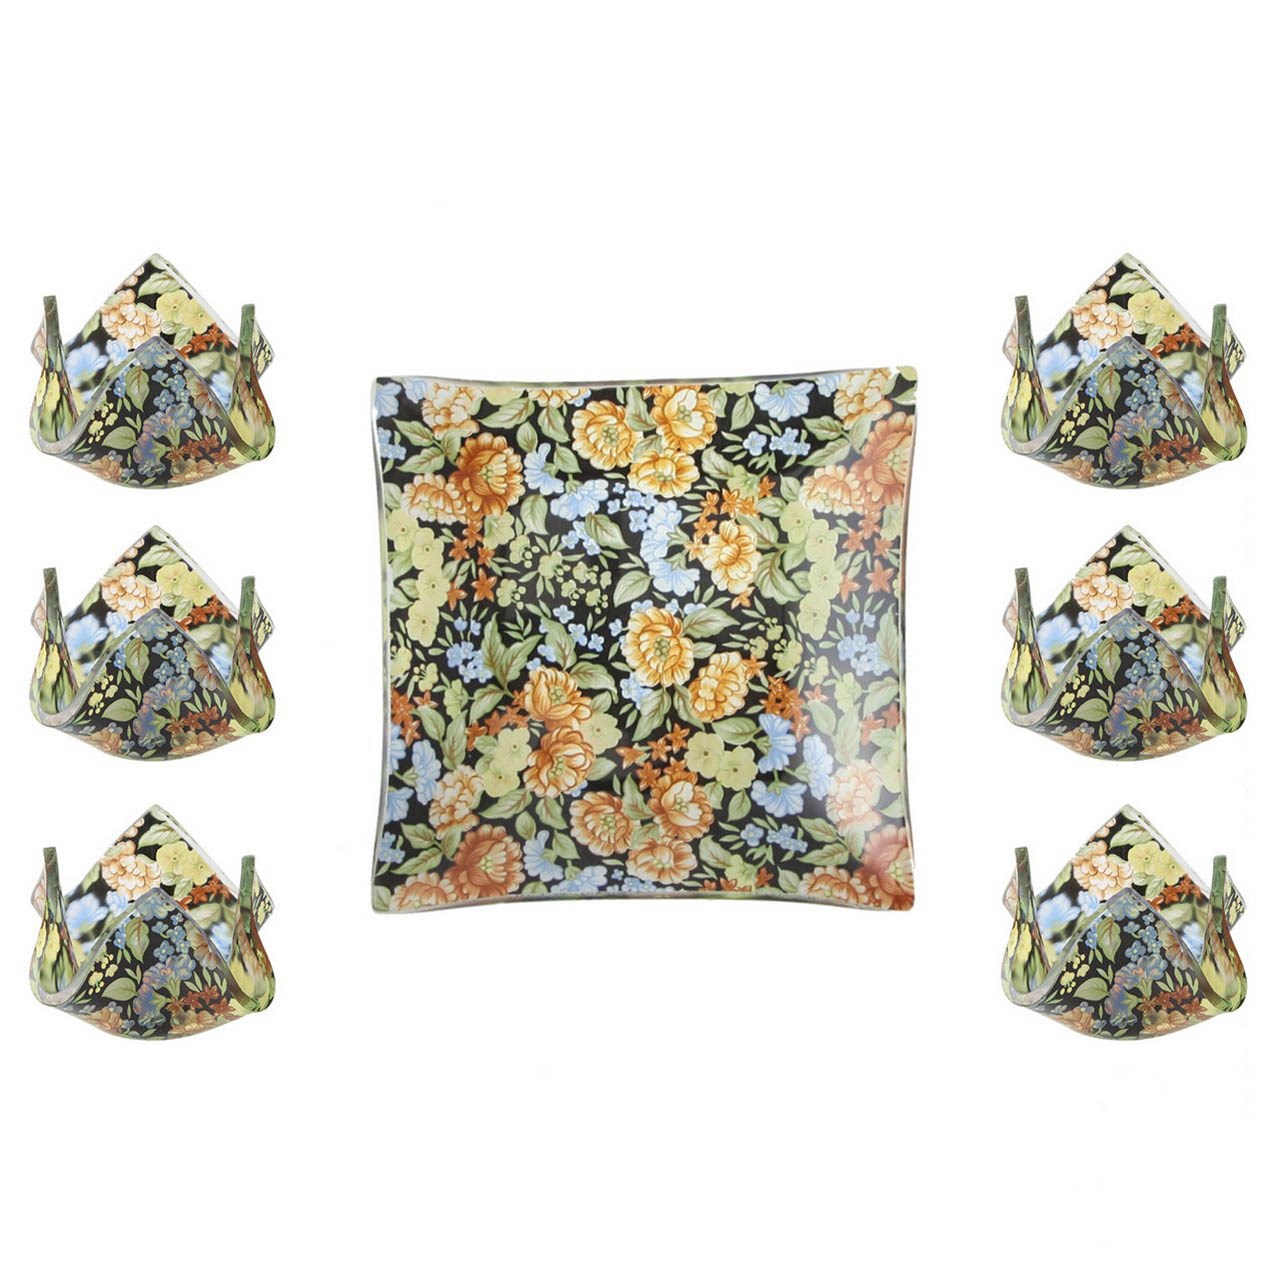 مجموعه ظروف هفت سین شیشه ای گالری سیلیس کد 180064